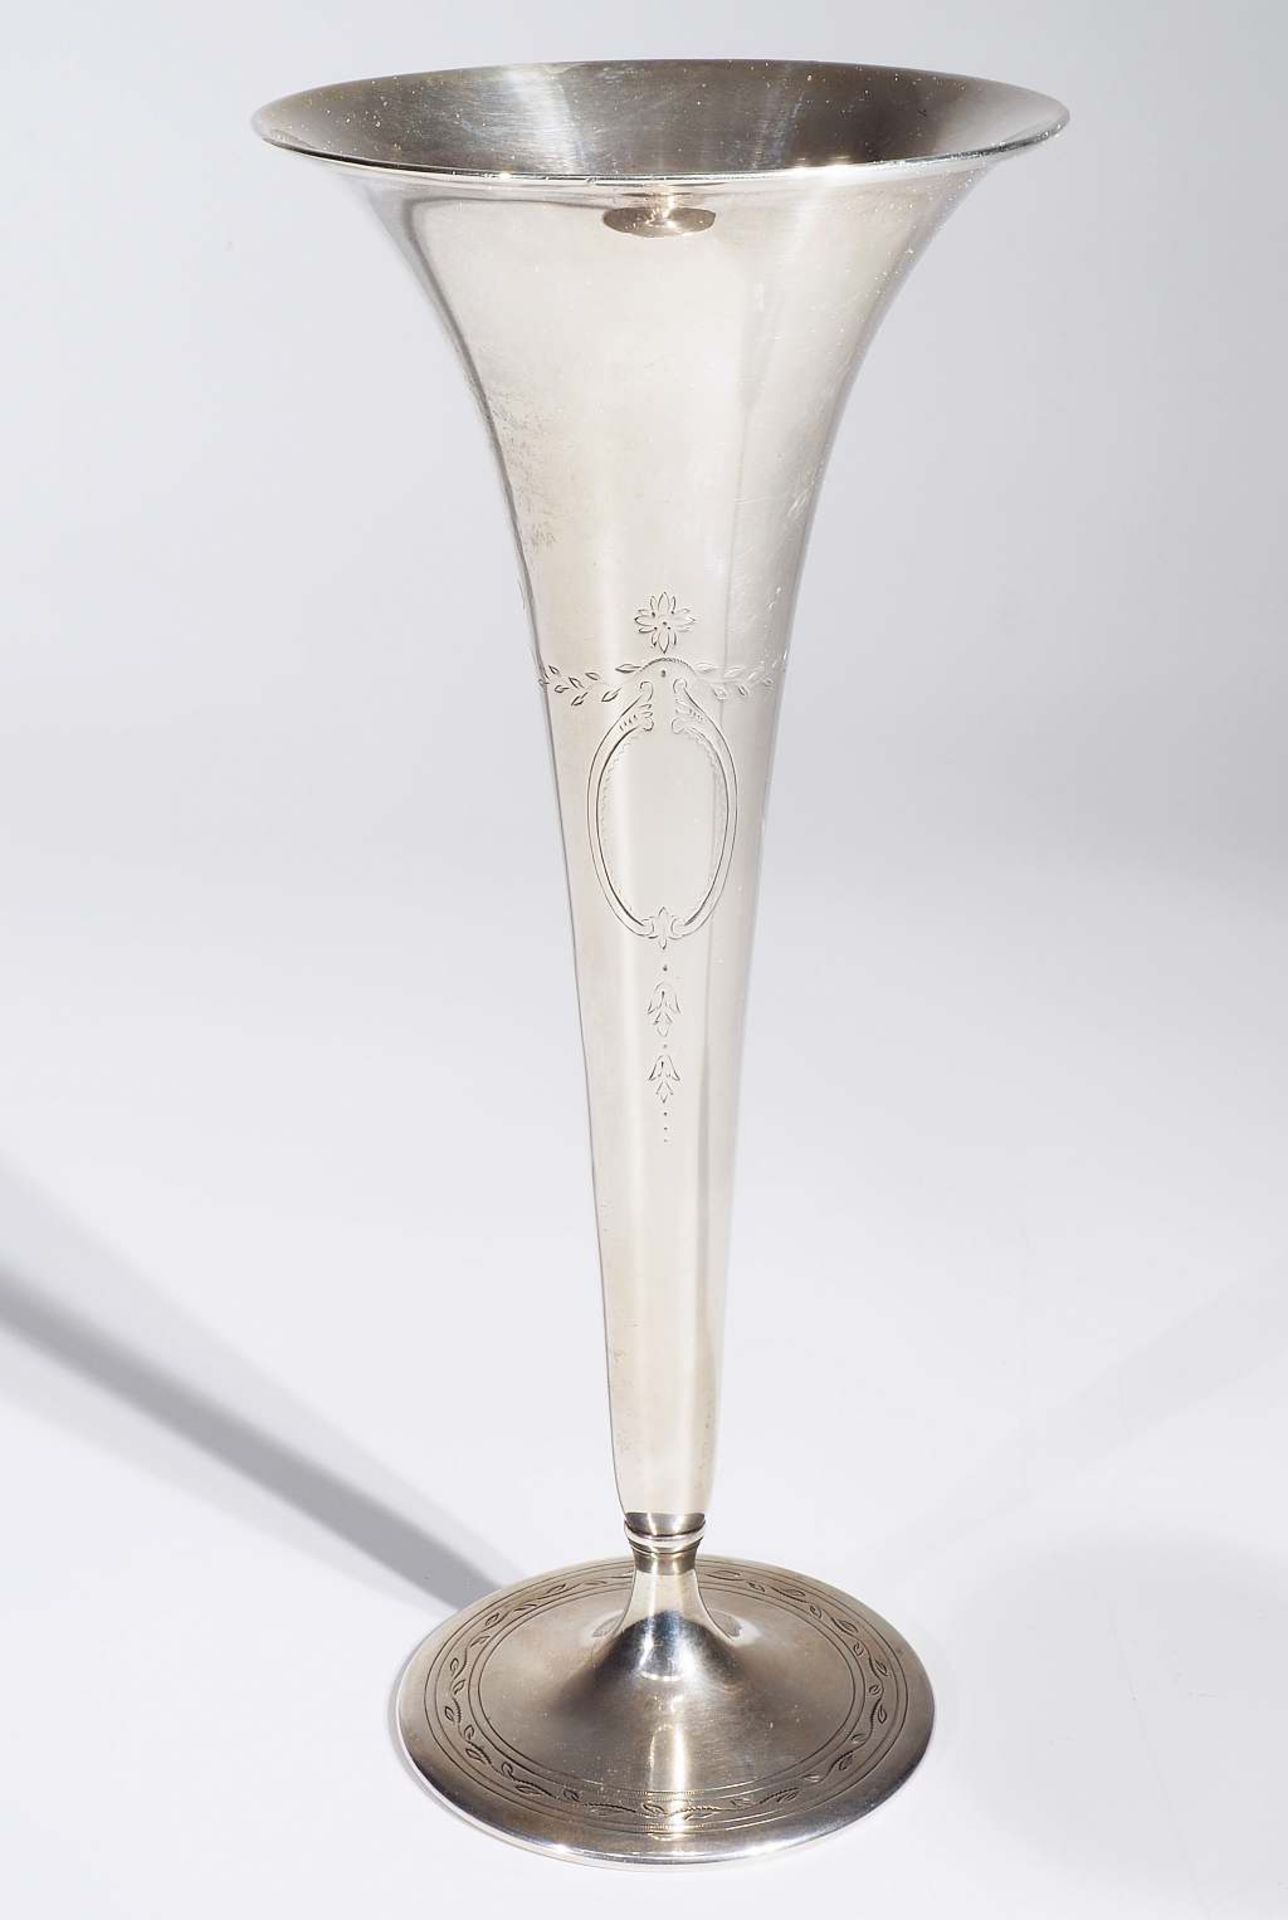 Tiffany - Kelchvase. Tiffany - Kelchvase. 925er Silber, gefußte Vase sich nach oben öffnend, - Bild 2 aus 6